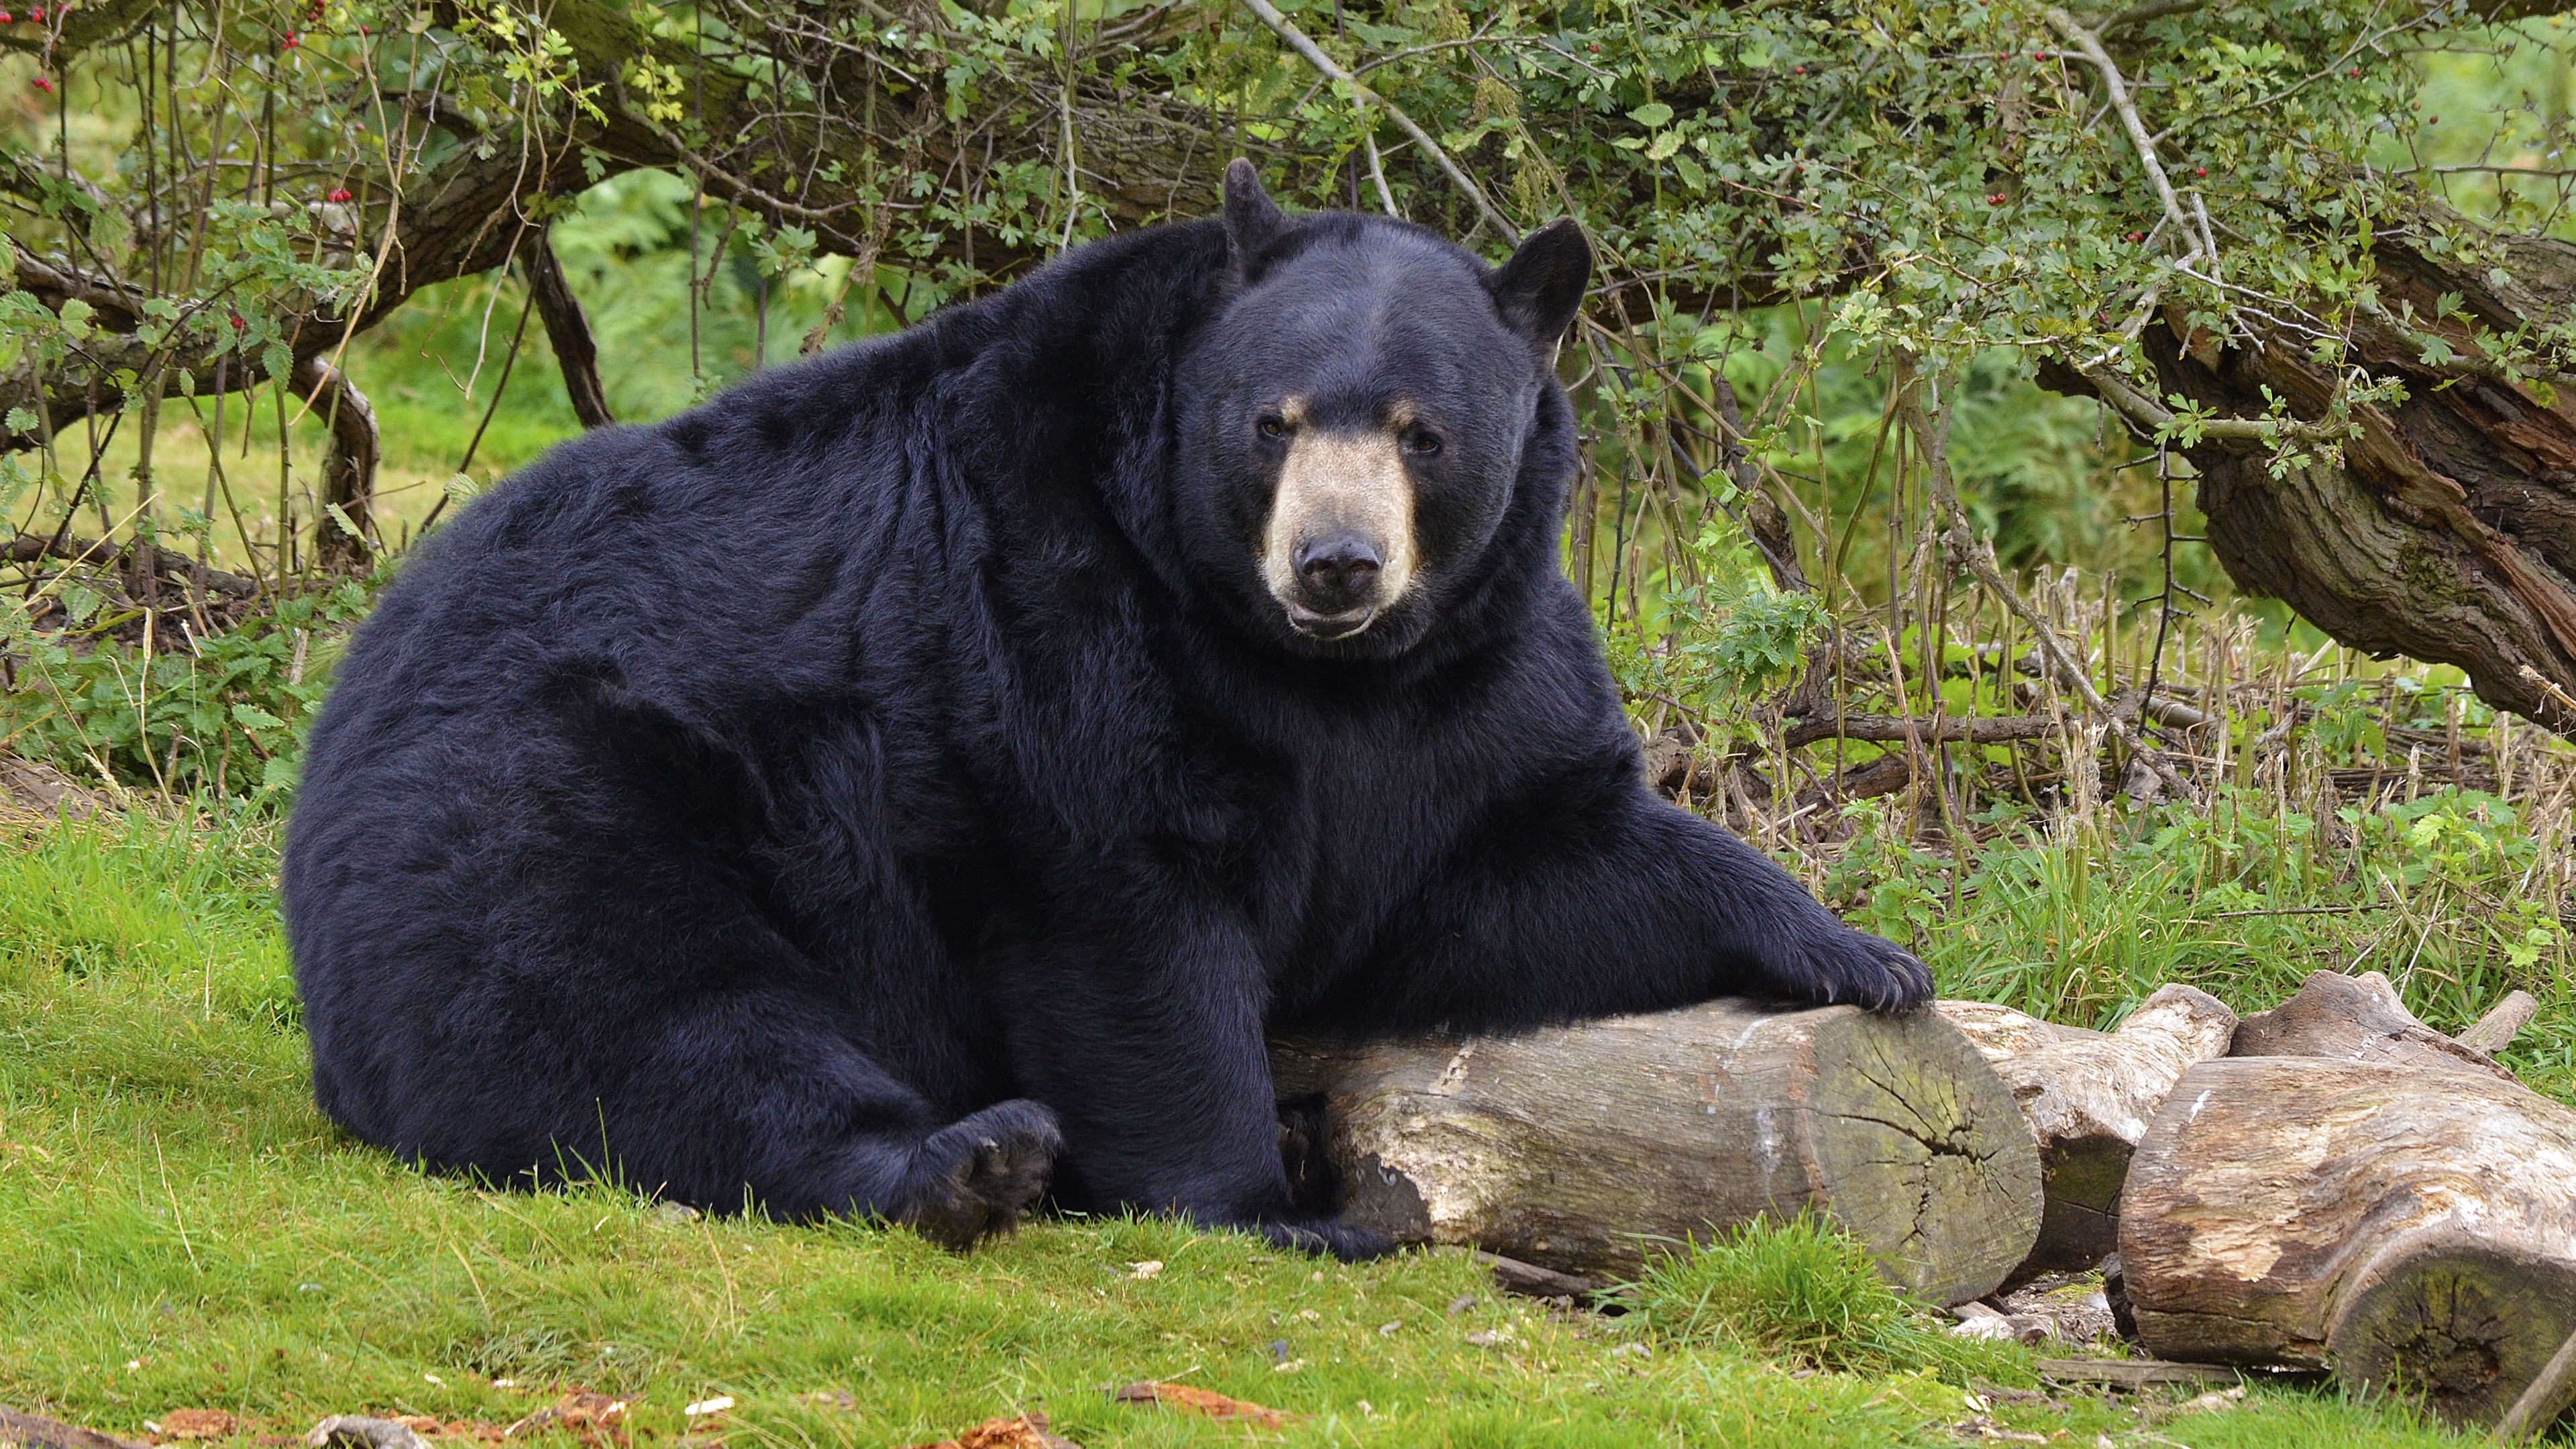 bear black bear forest 4k 1542241888 - bear, black bear, forest 4k - Forest, black bear, Bear